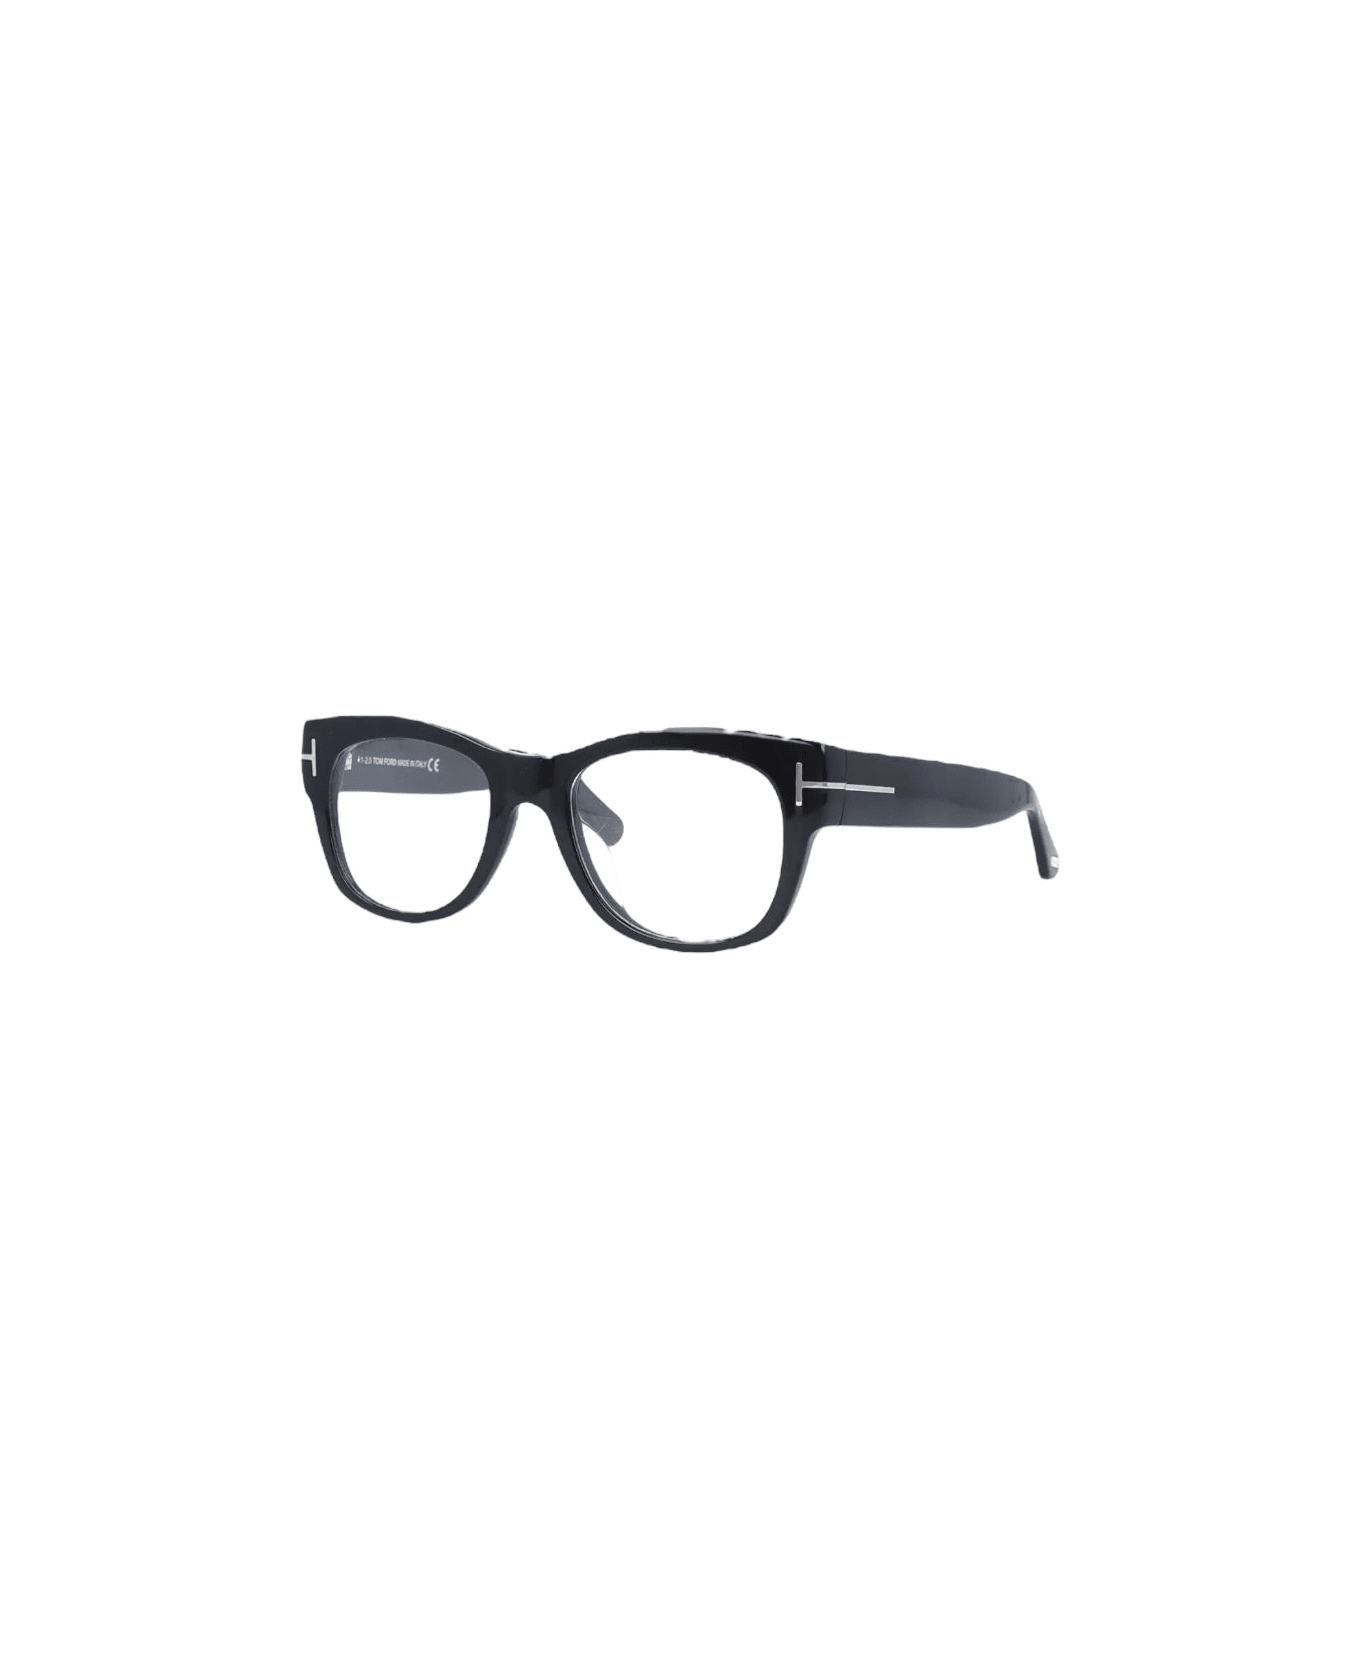 Tom Ford Eyewear Tf 5040 - Black Glasses アイウェア